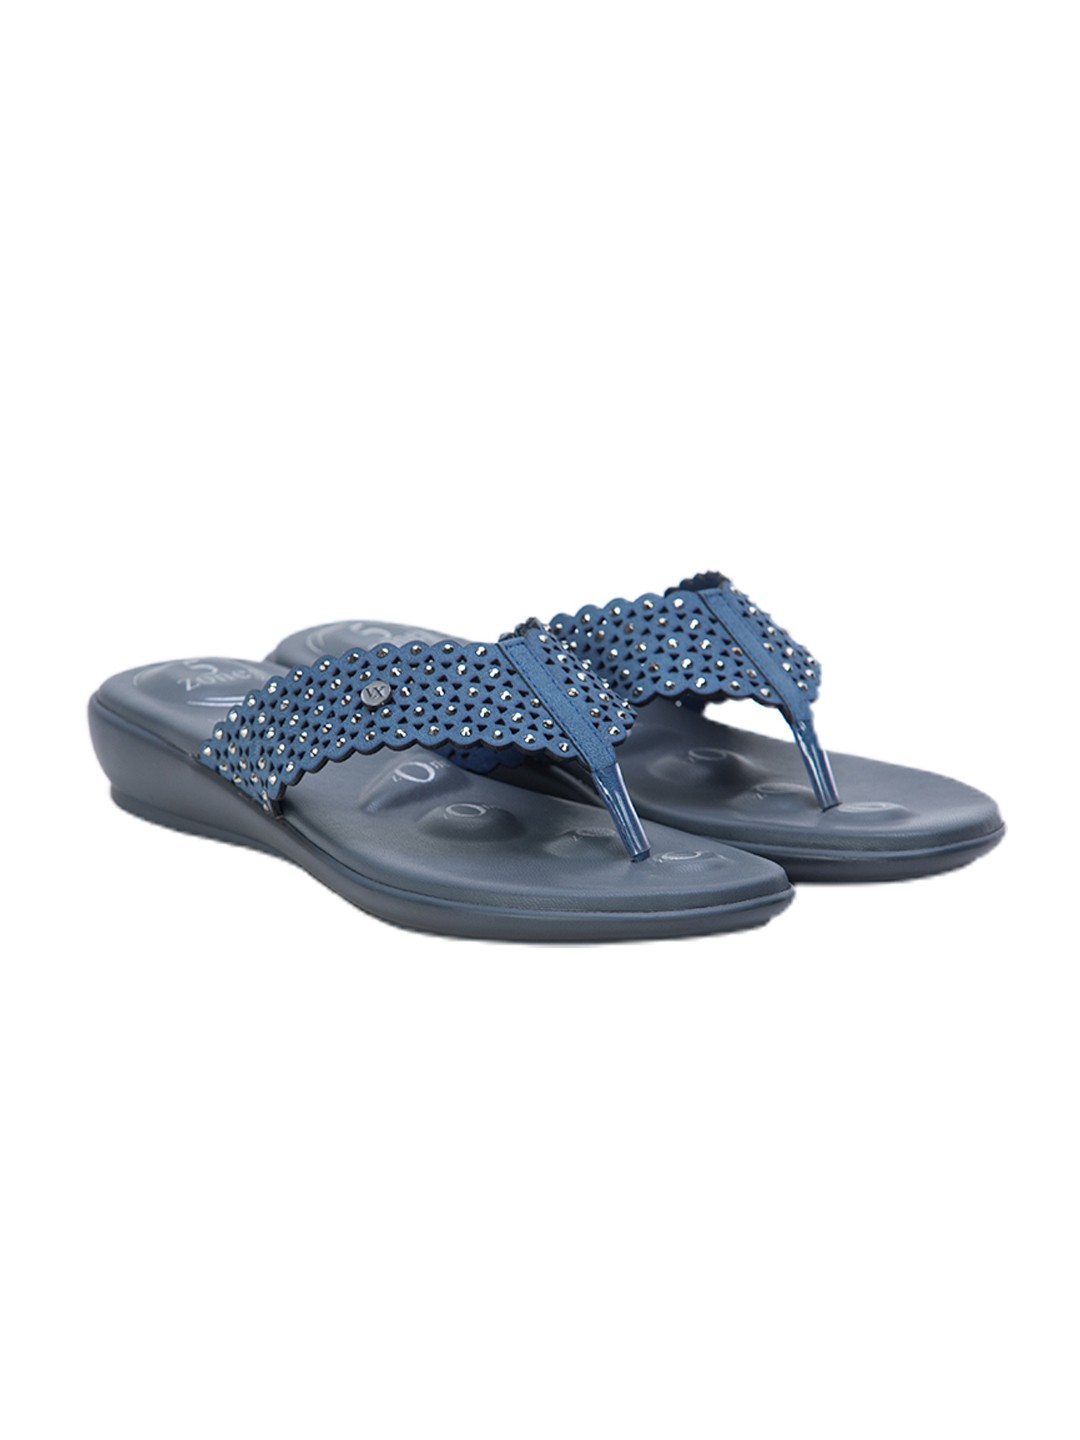 Buy Von Wellx Germany Comfort Gleam Blue Slippers Online in Chennai